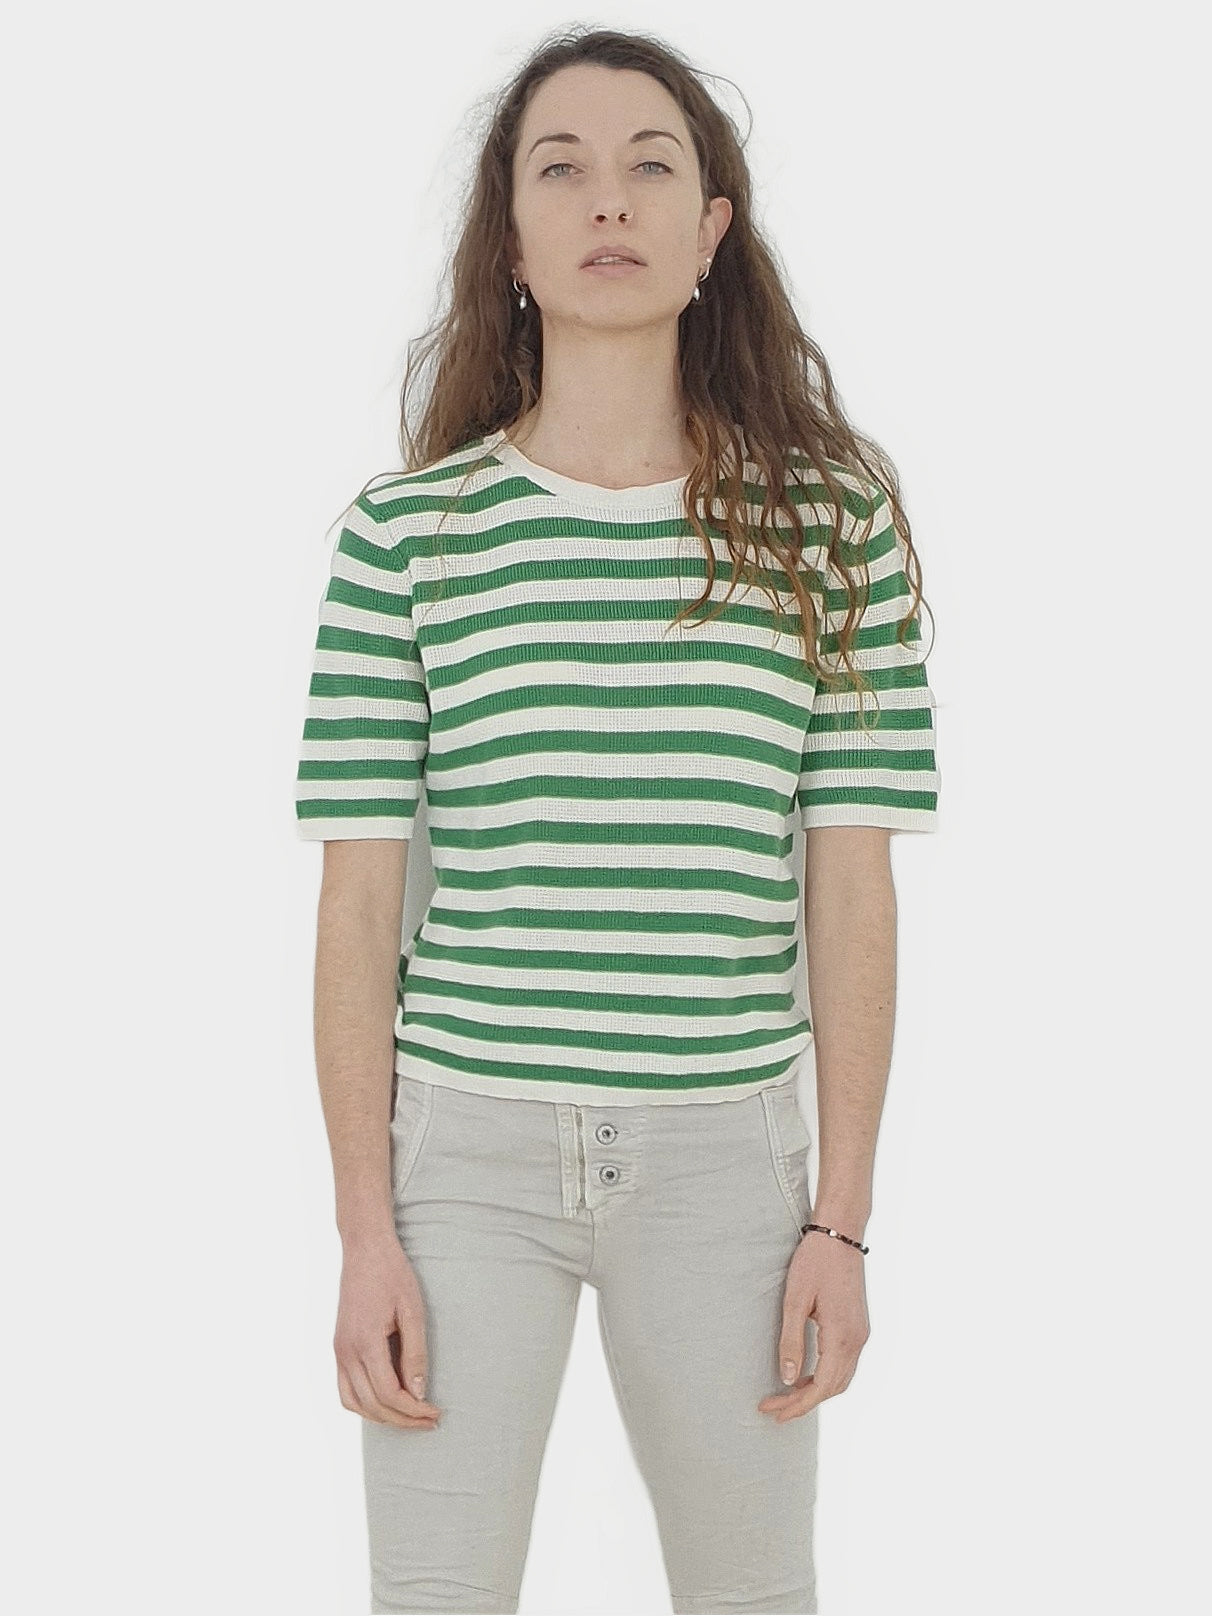 INNA | Breton Knit Sweater Top | Green